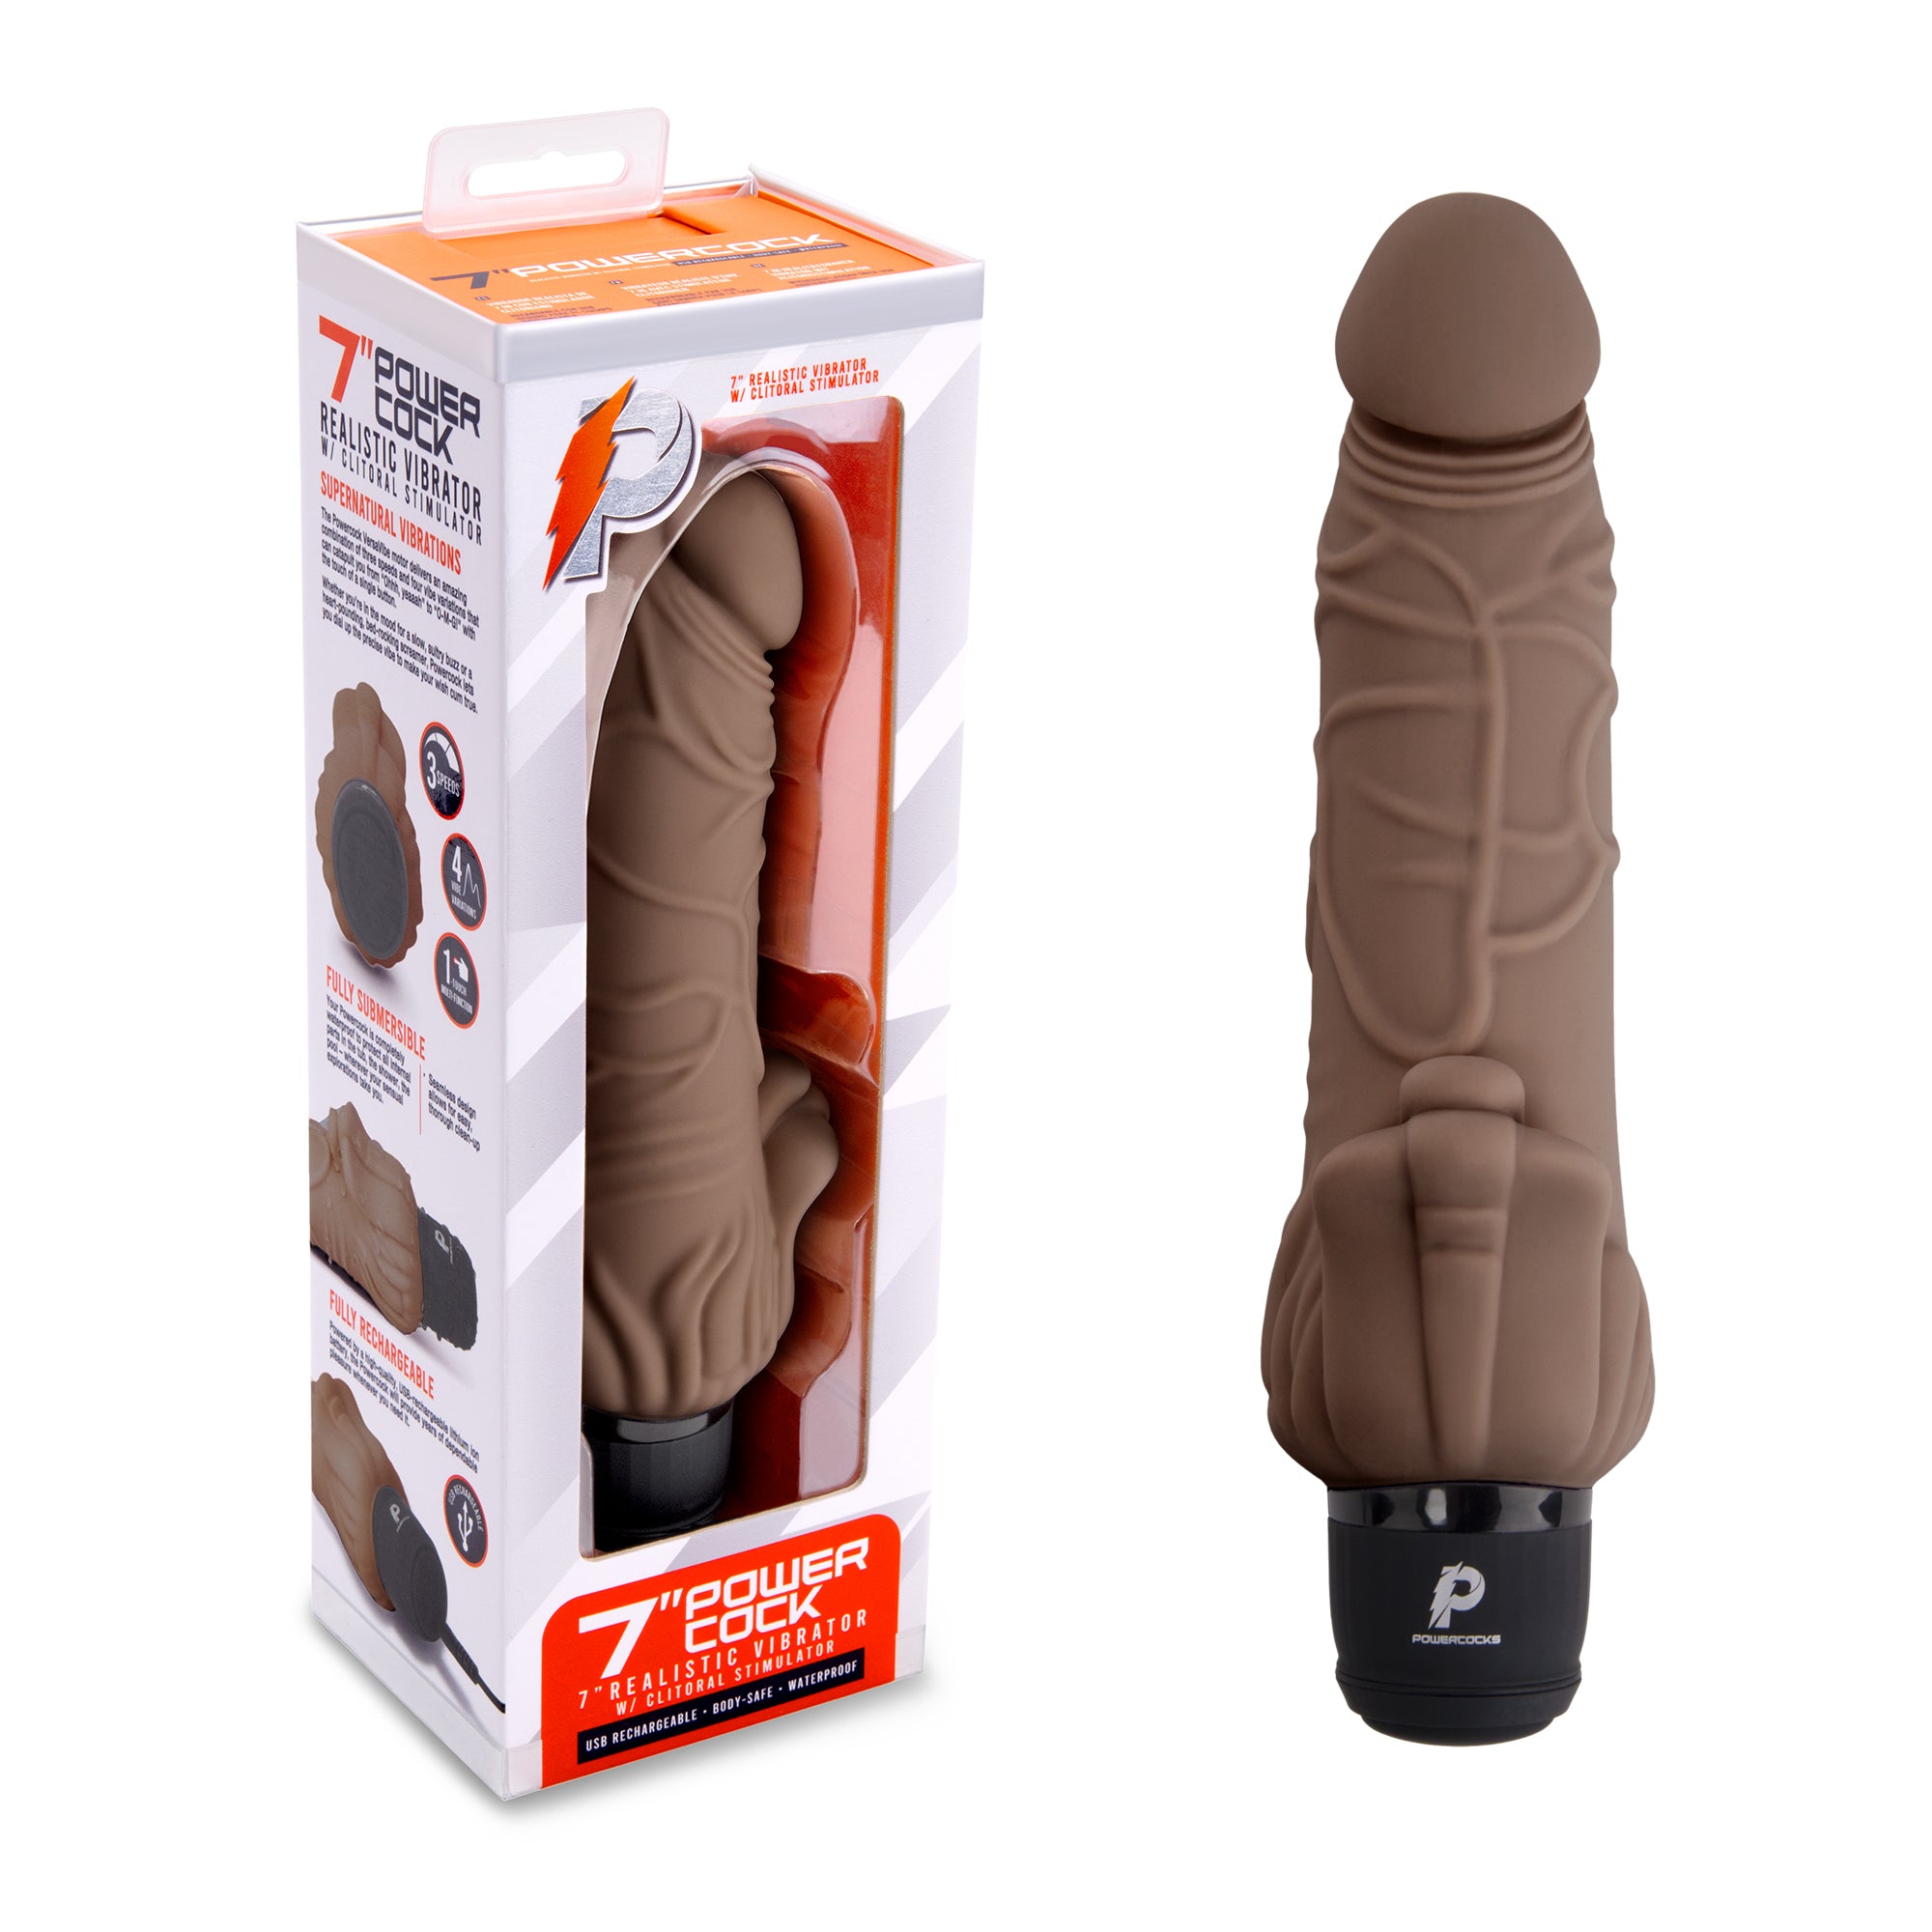 7" Realistic Vibrator with Clitoral Stimulator Dark Brown